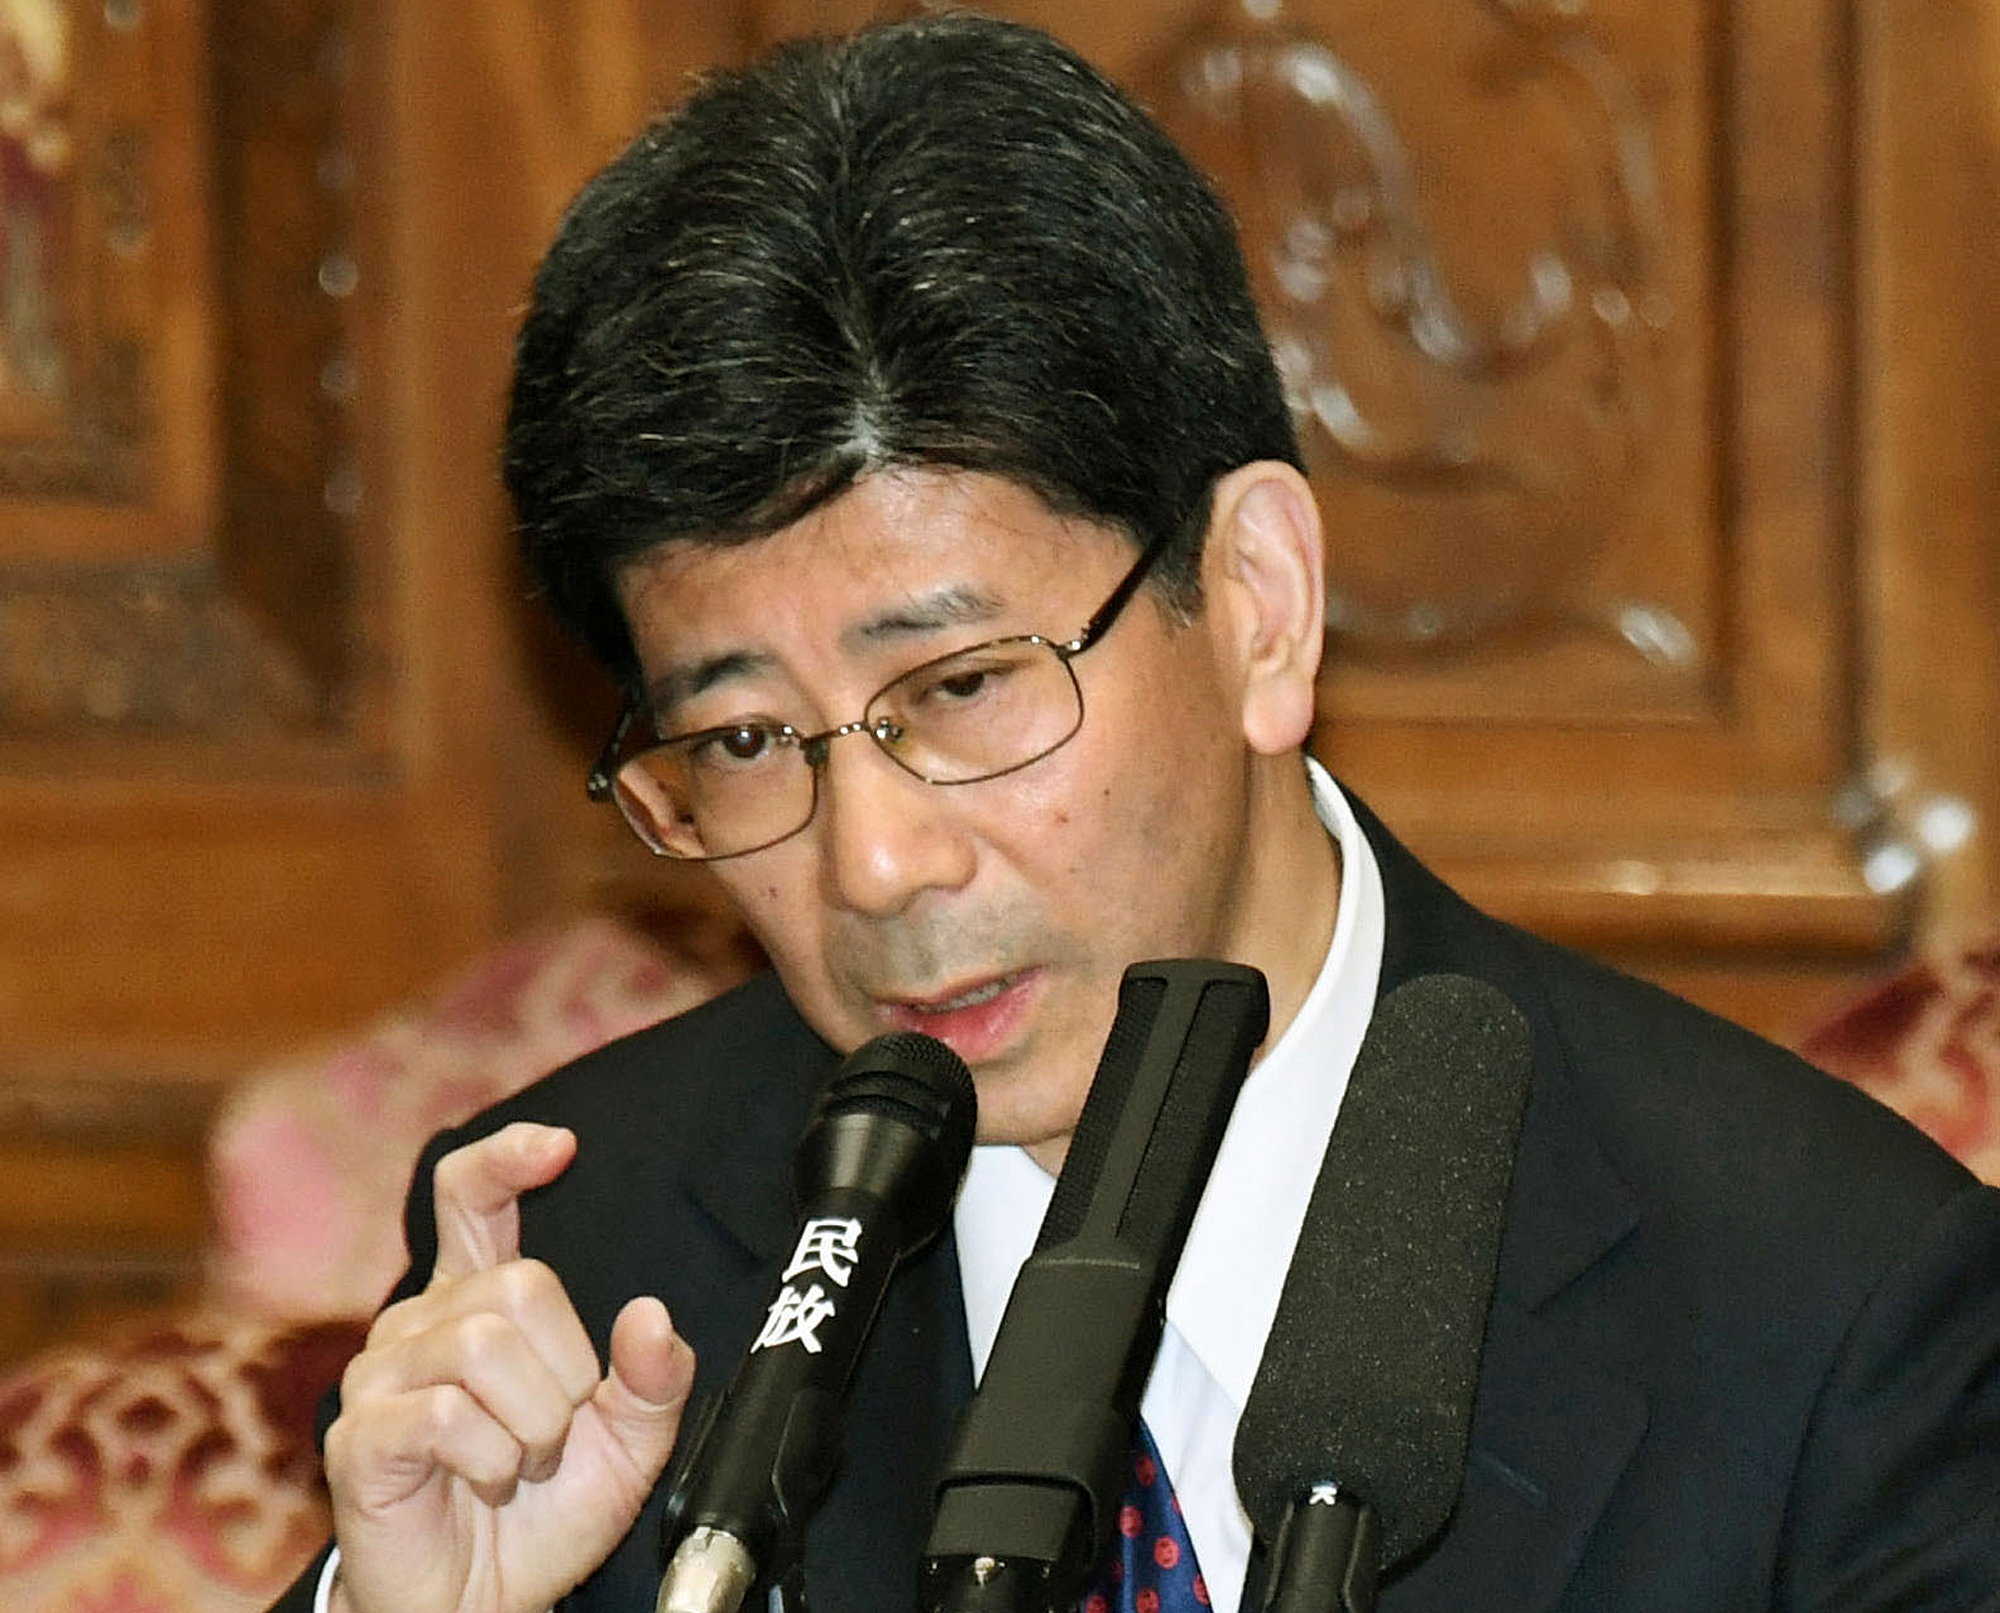 Ръководителят на японската данъчна служба Нобухиса Сагава подаде оставка след скандала